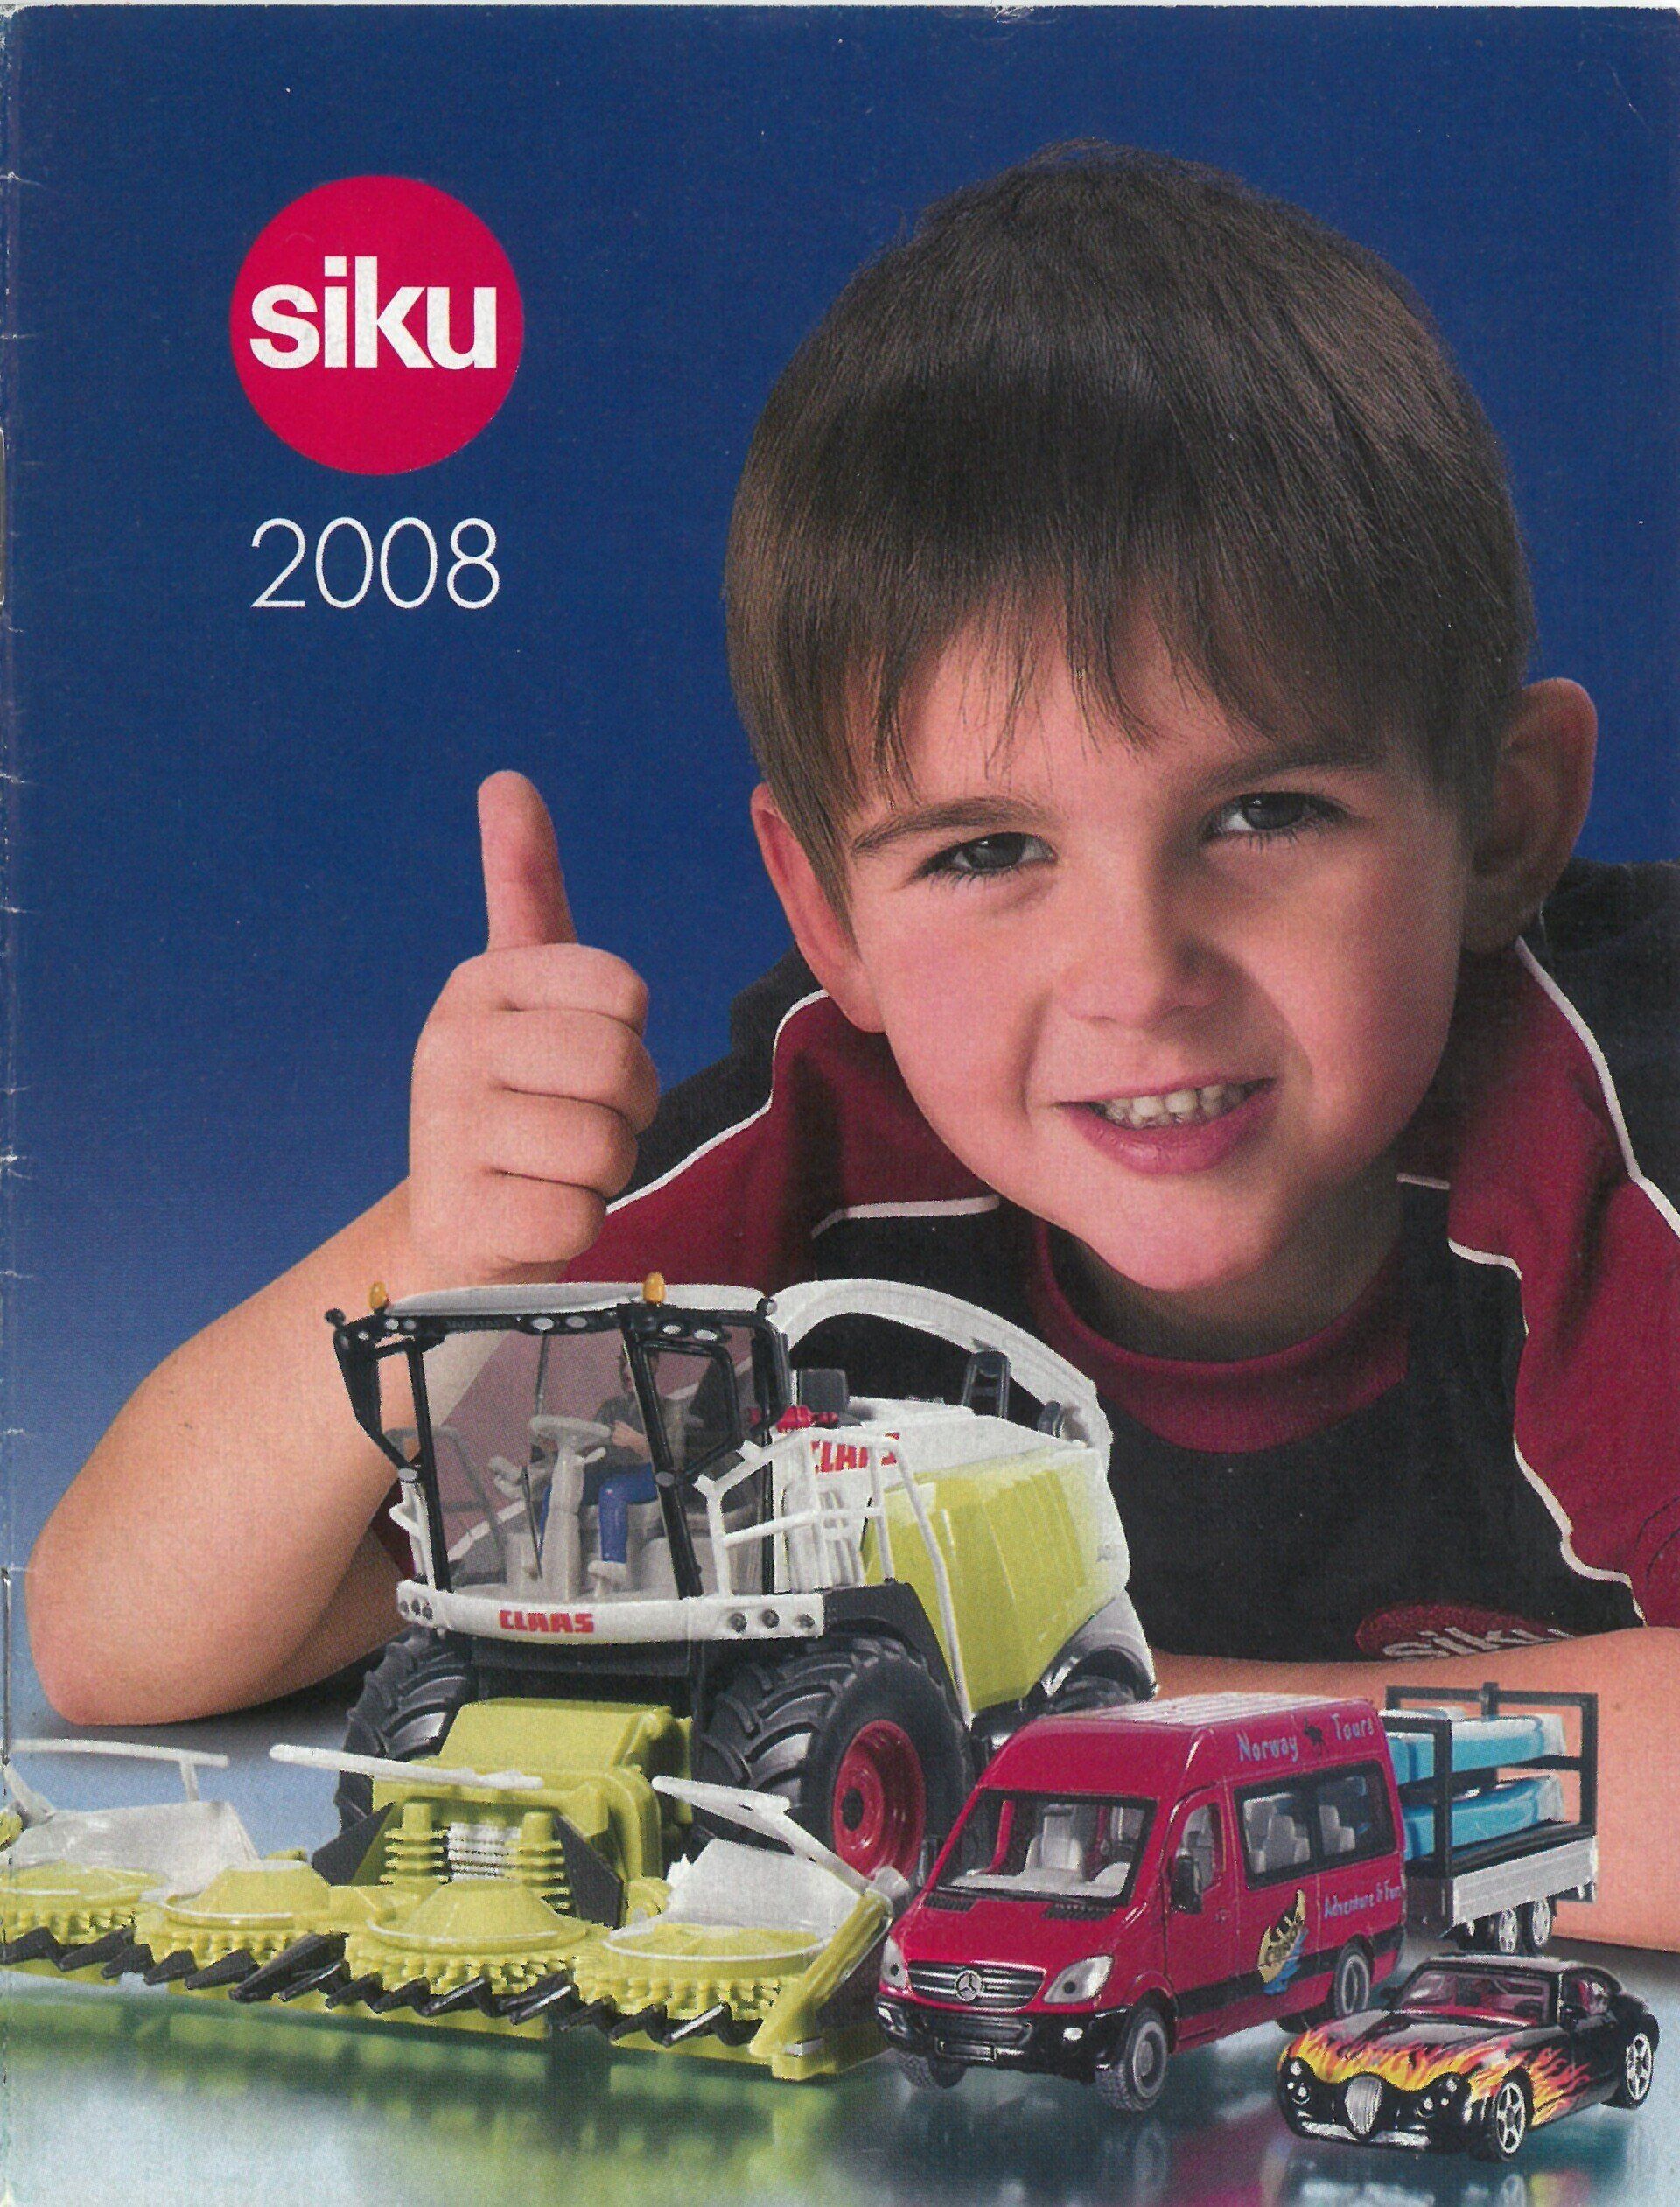 Siku catalogue 2008